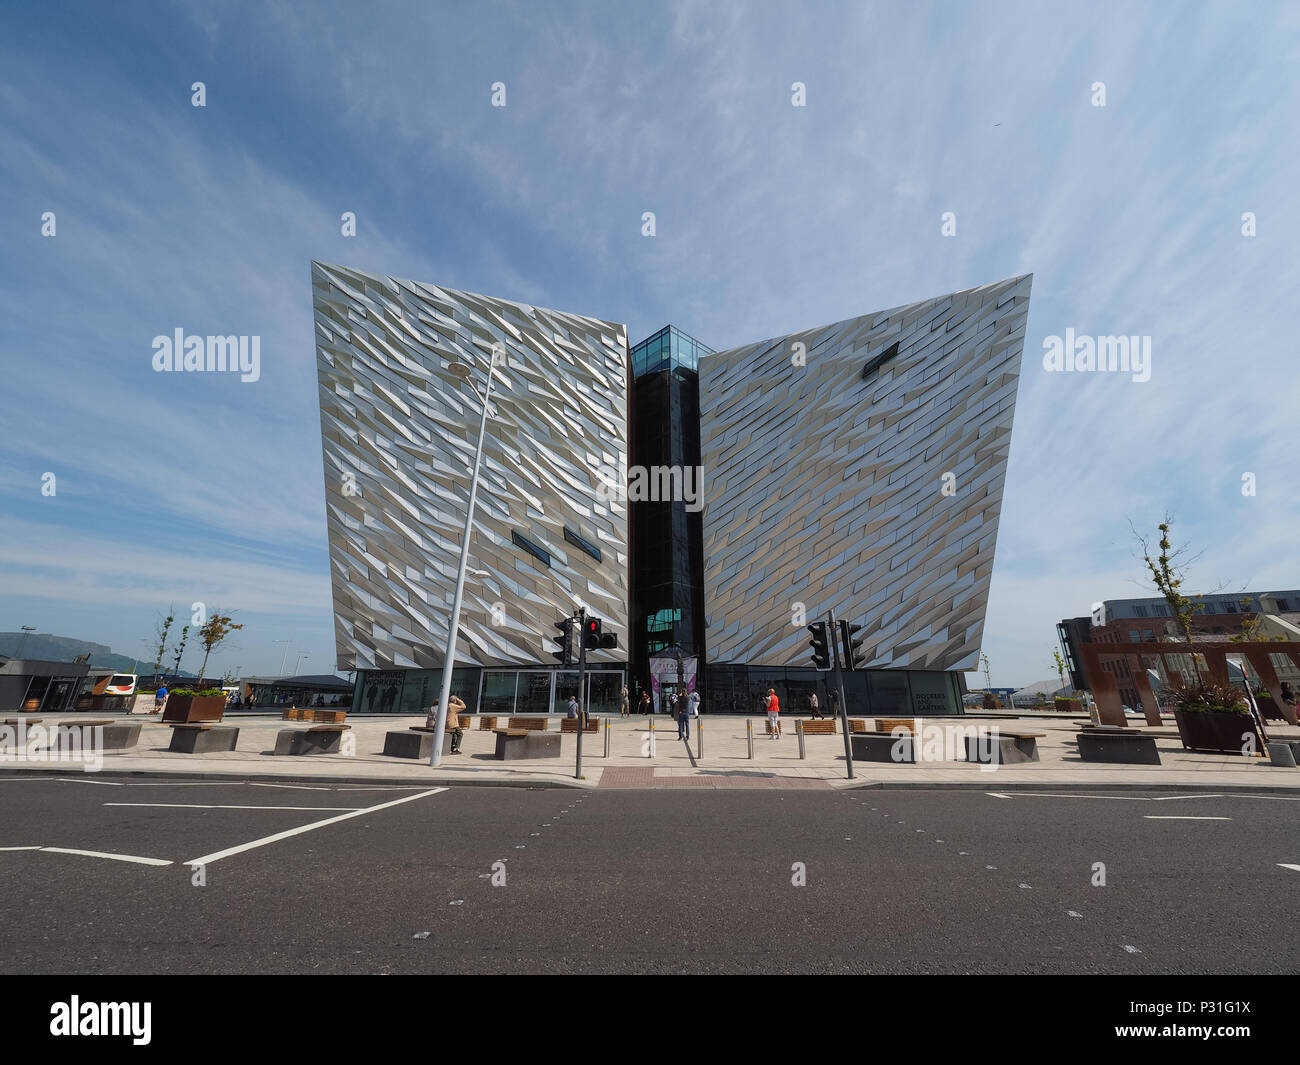 BELFAST, Royaume-Uni - CIRCA Juin 2018 : Titanic Belfast centre sur le site de l'ancien chantier naval Harland & Wolff où le Titanic a été construit Banque D'Images